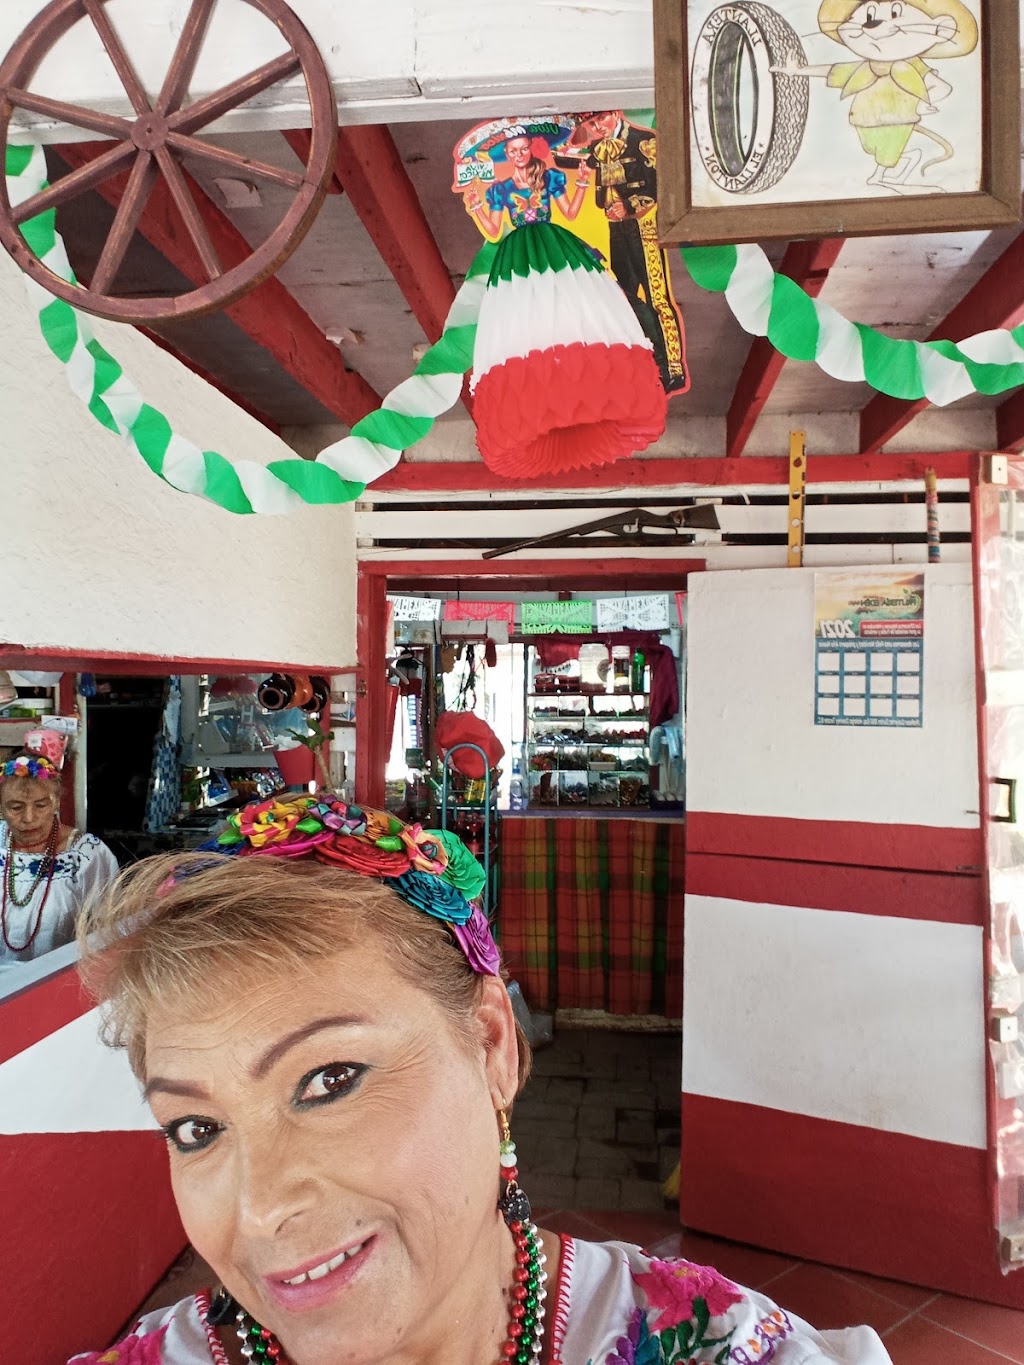 La Tienda de “El Capiri” | Colonia El Capiro, calle El paraiso, 21472 Tecate, B.C., Mexico | Phone: 665 851 1998